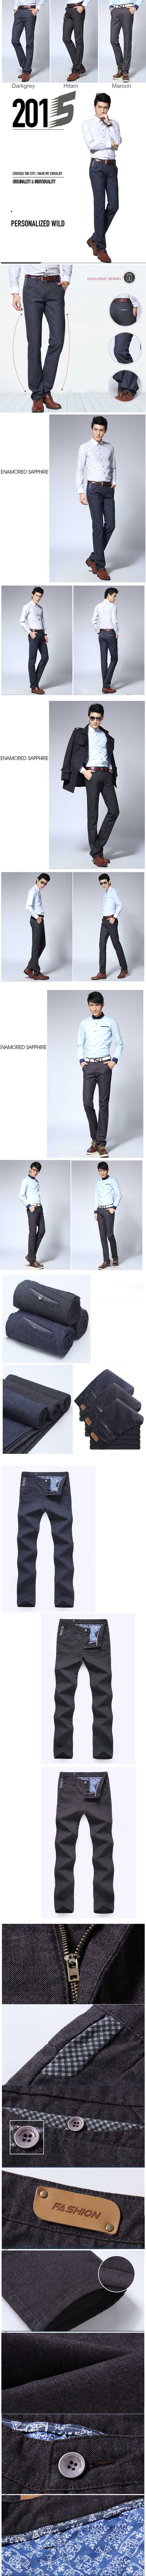 jual celana kerja pria model slimfit , terbuat dari bahan semi jeans membantu anda tampil keren dan nyaman dipakai, temukan koleksi celana kerja pria terlengkap disini